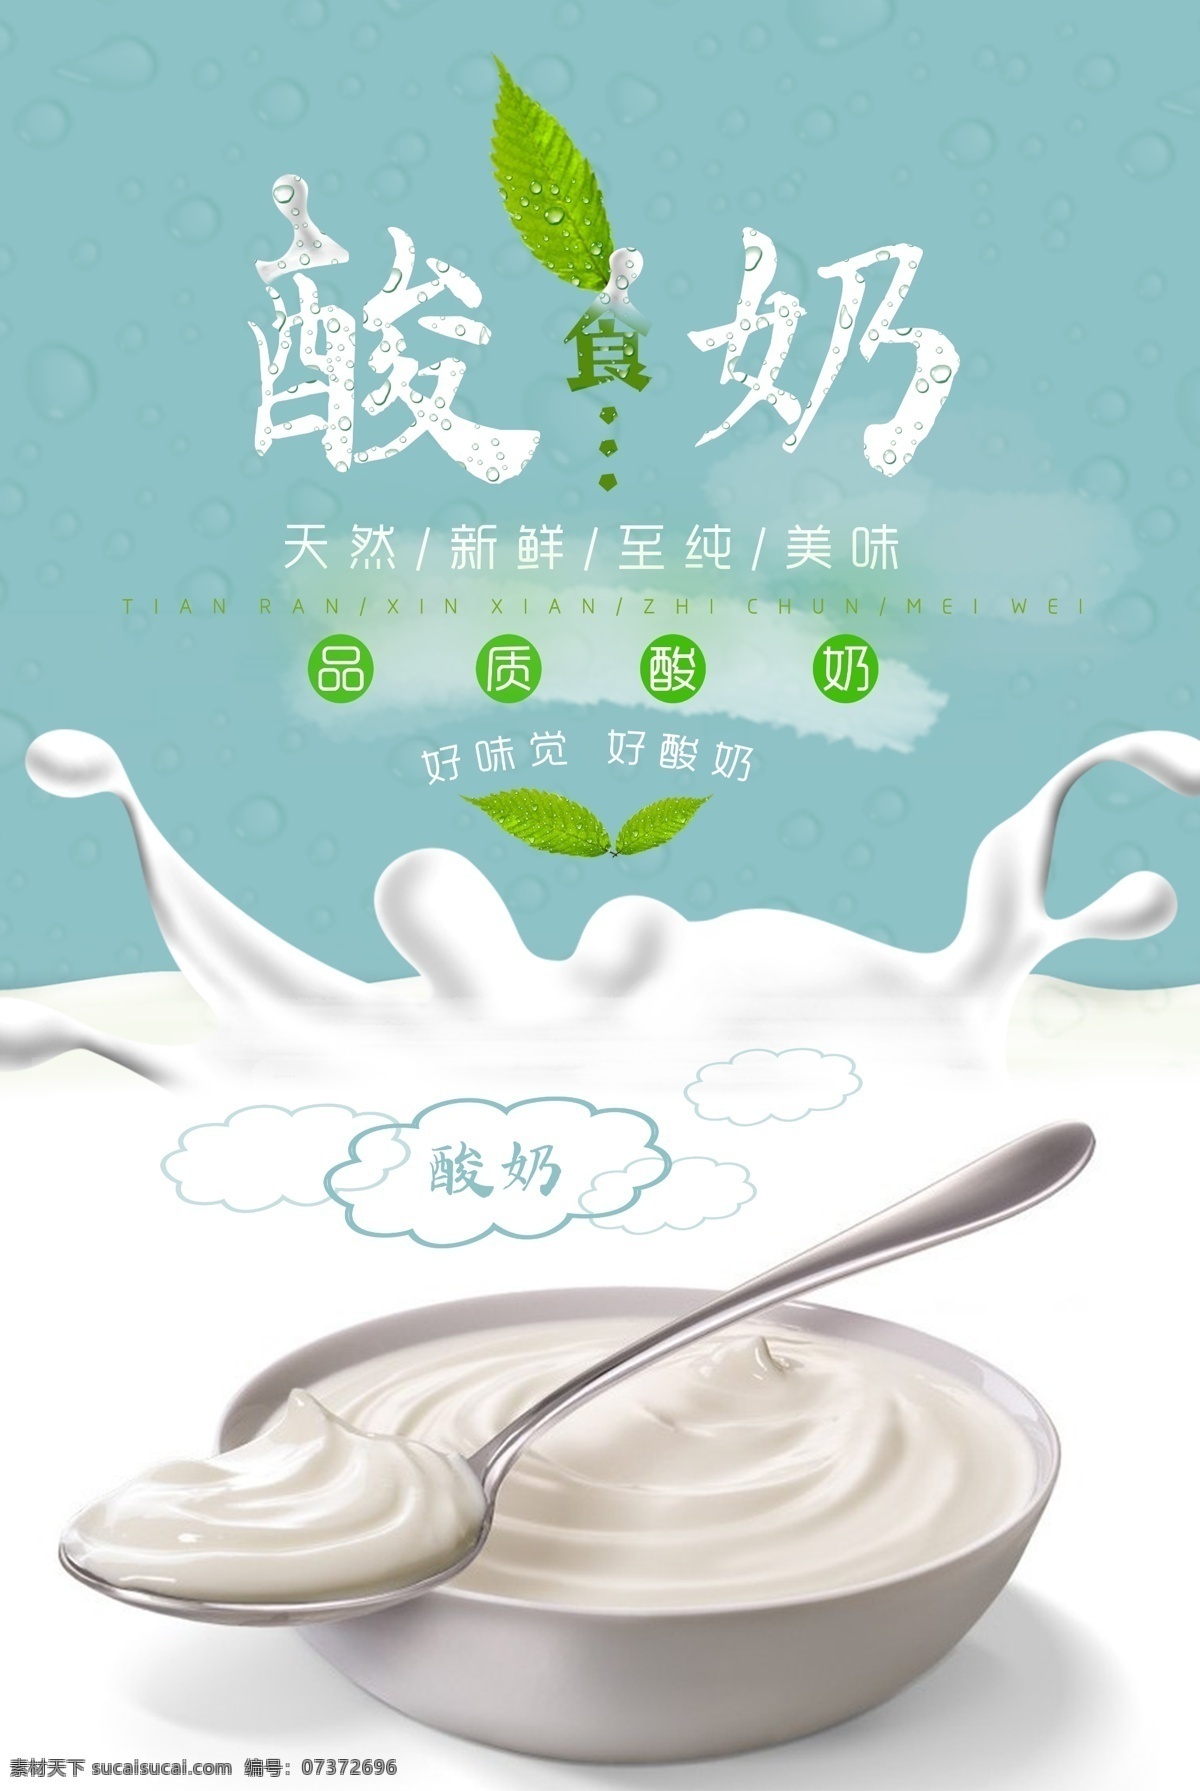 酸奶海报 酸奶 酸牛奶 新鲜酸奶 酸奶勺子 带碗酸奶 海报